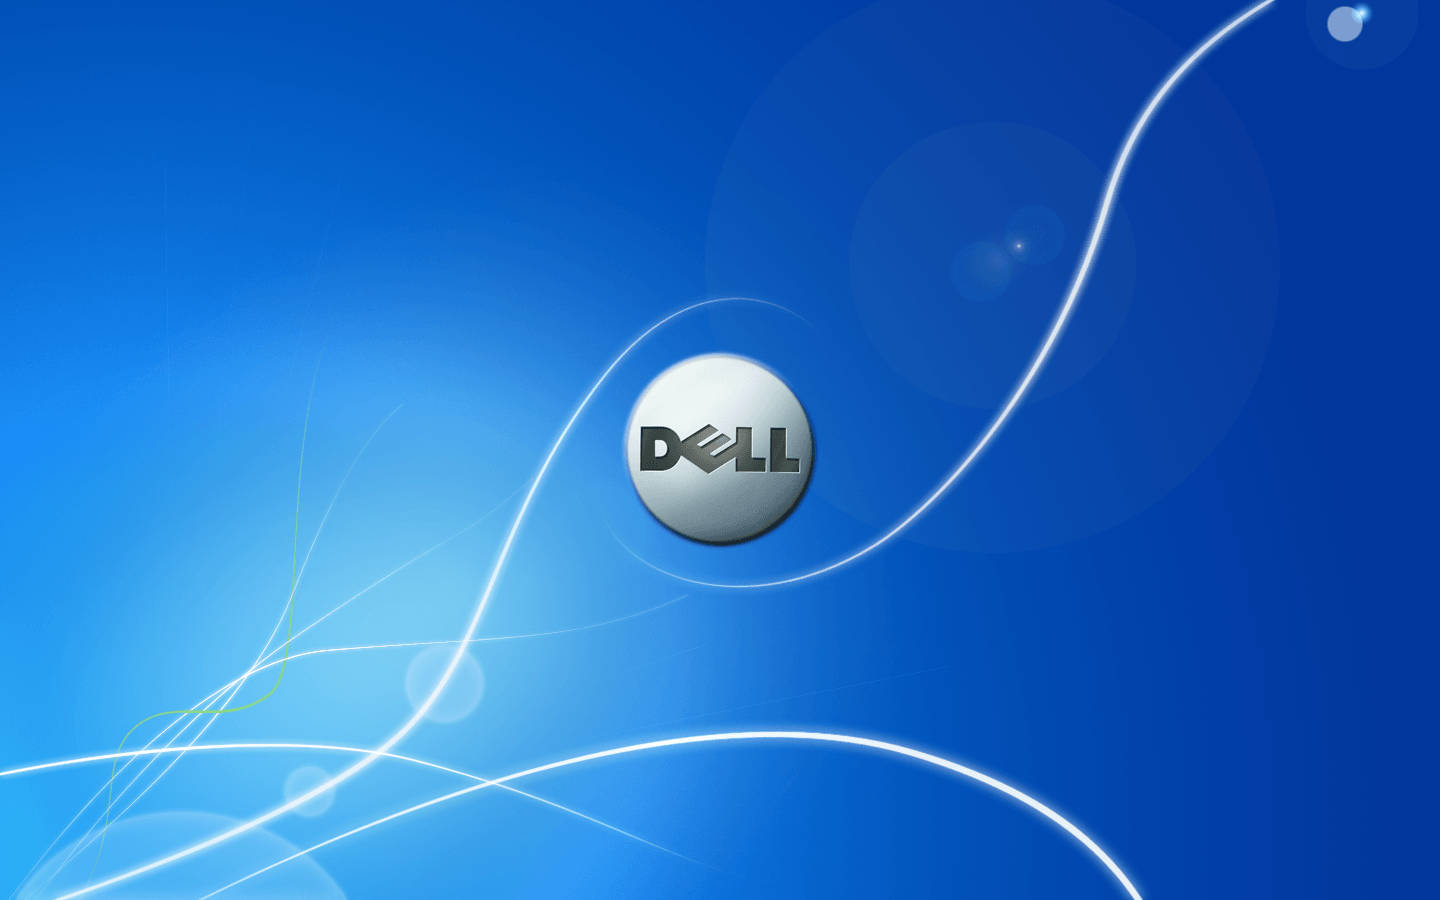 Dell Trademark On Blue Wallpaper